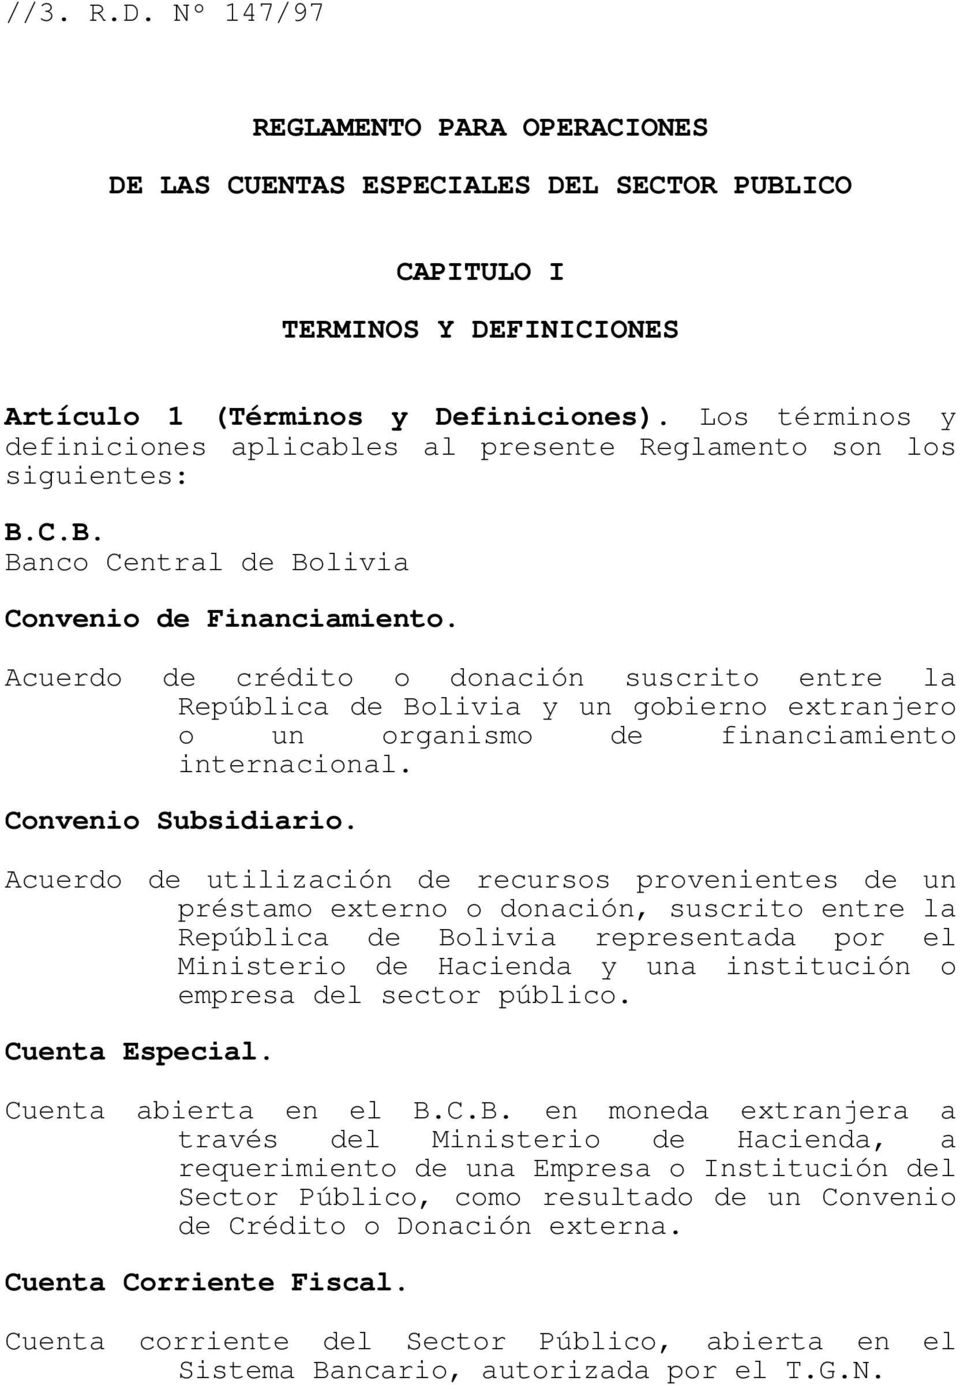 Acuerdo de crédito o donación suscrito entre la República de Bolivia y un gobierno extranjero o un organismo de financiamiento internacional. Convenio Subsidiario.